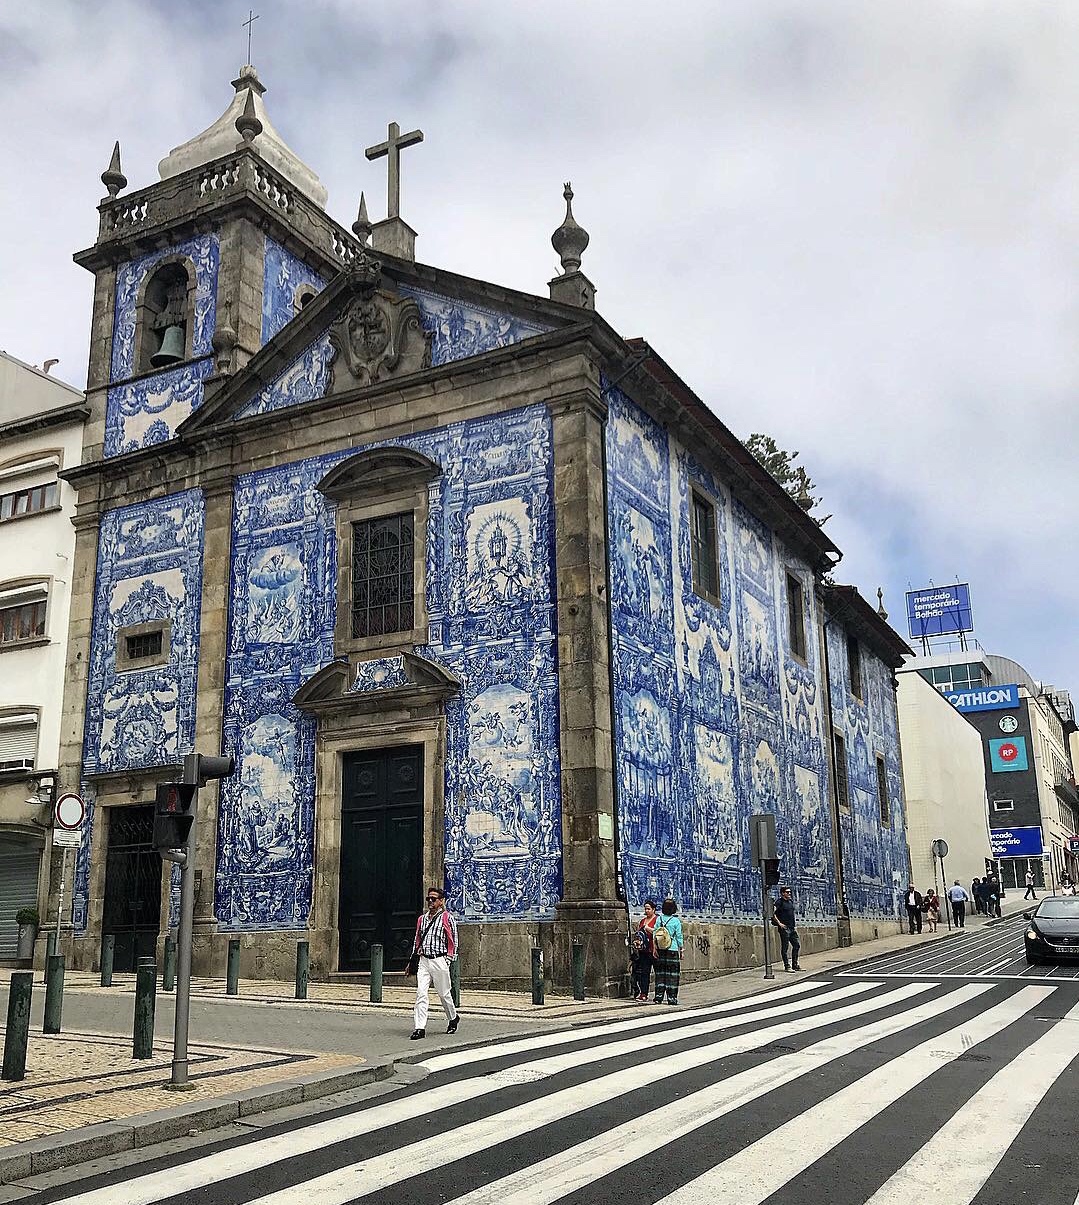 保留了18世纪风格的葡萄牙圣灵教堂青花瓷装饰了整个教堂的外墙面如